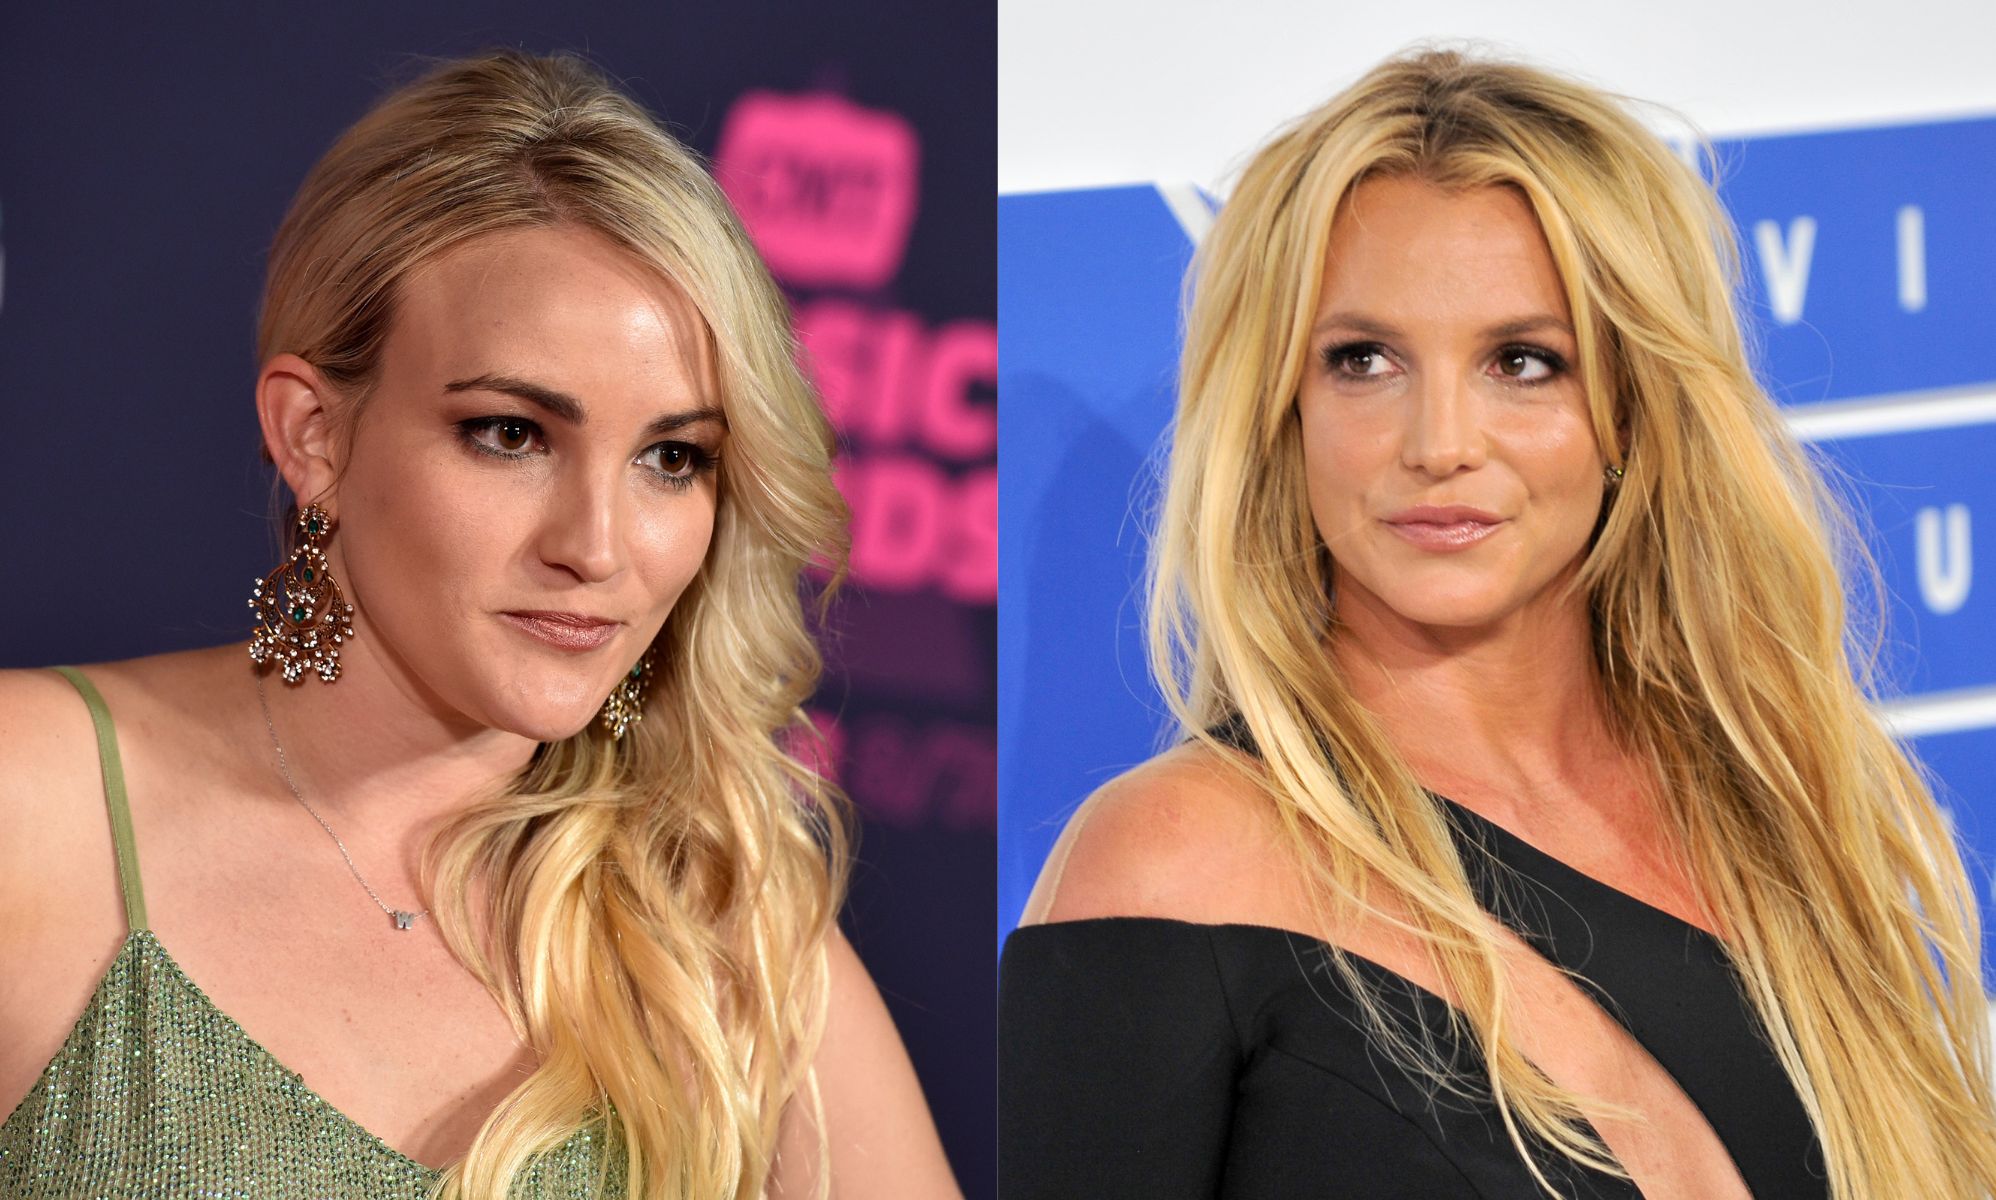 ¿Por qué se pelearon Jamie Lynn Spears y Britney Spears en "I'm A Celeb"?